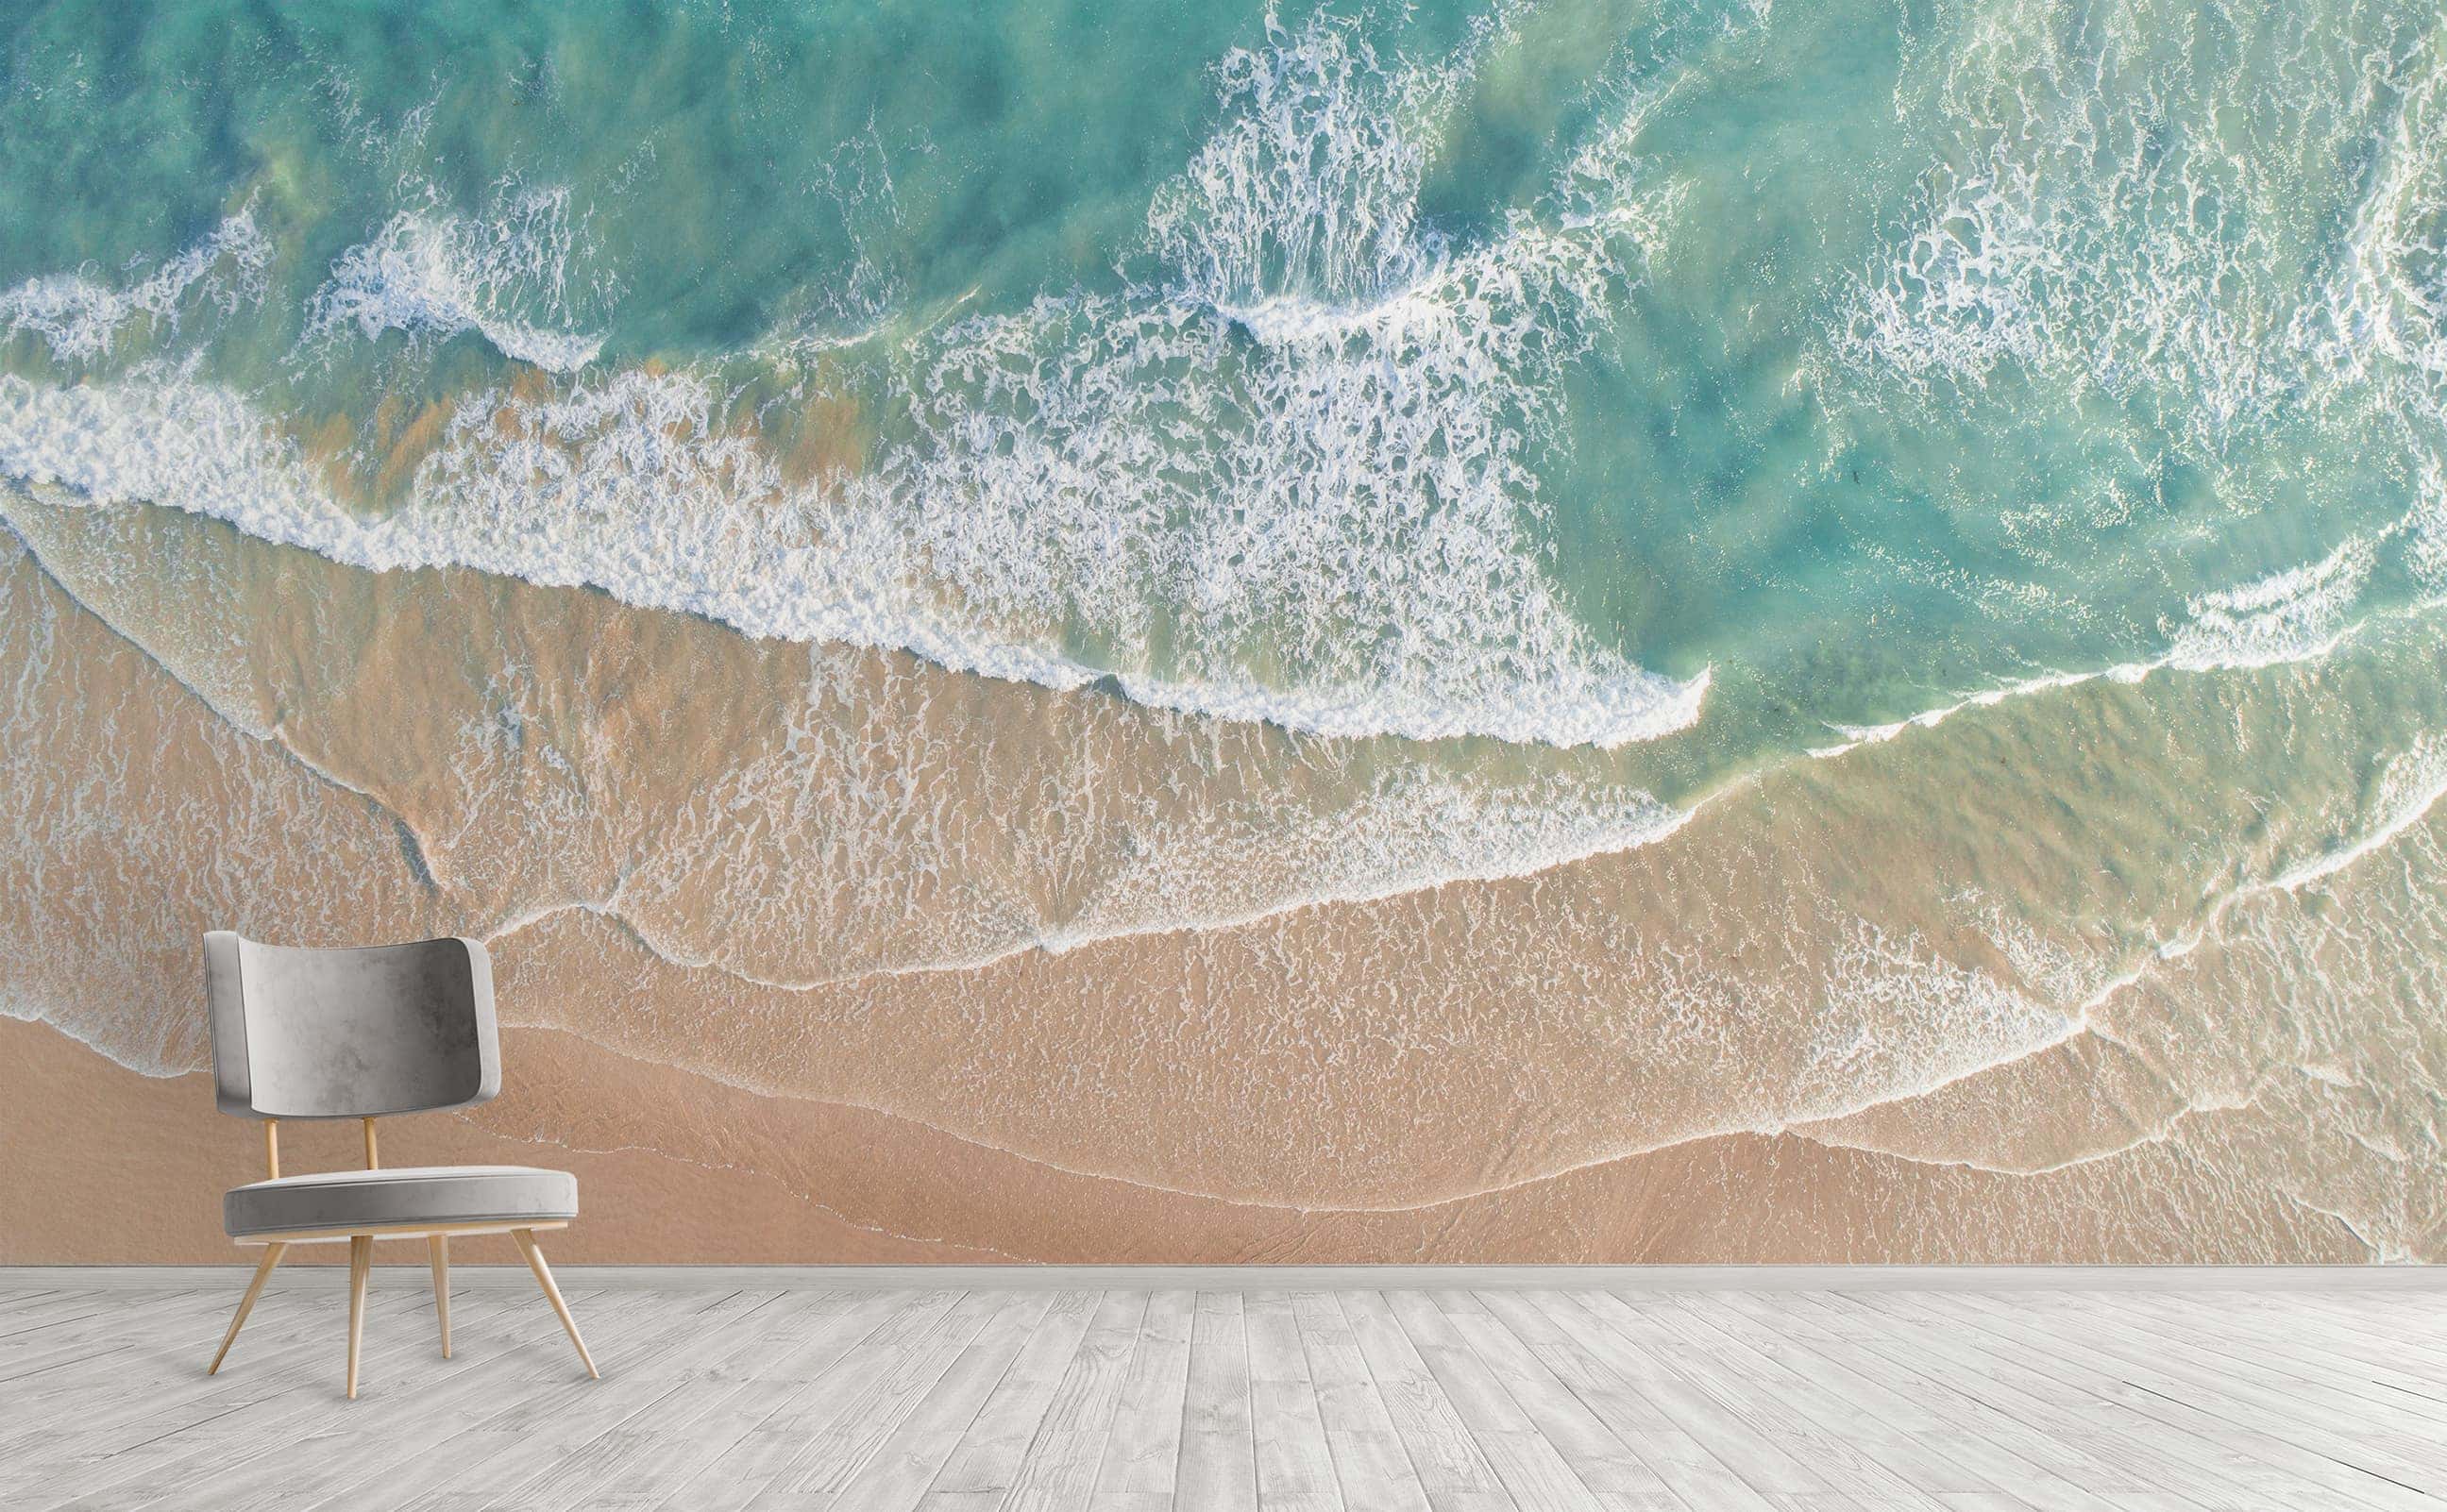 Waves in the sea Wallpaper 4k Ultra HD ID:6686